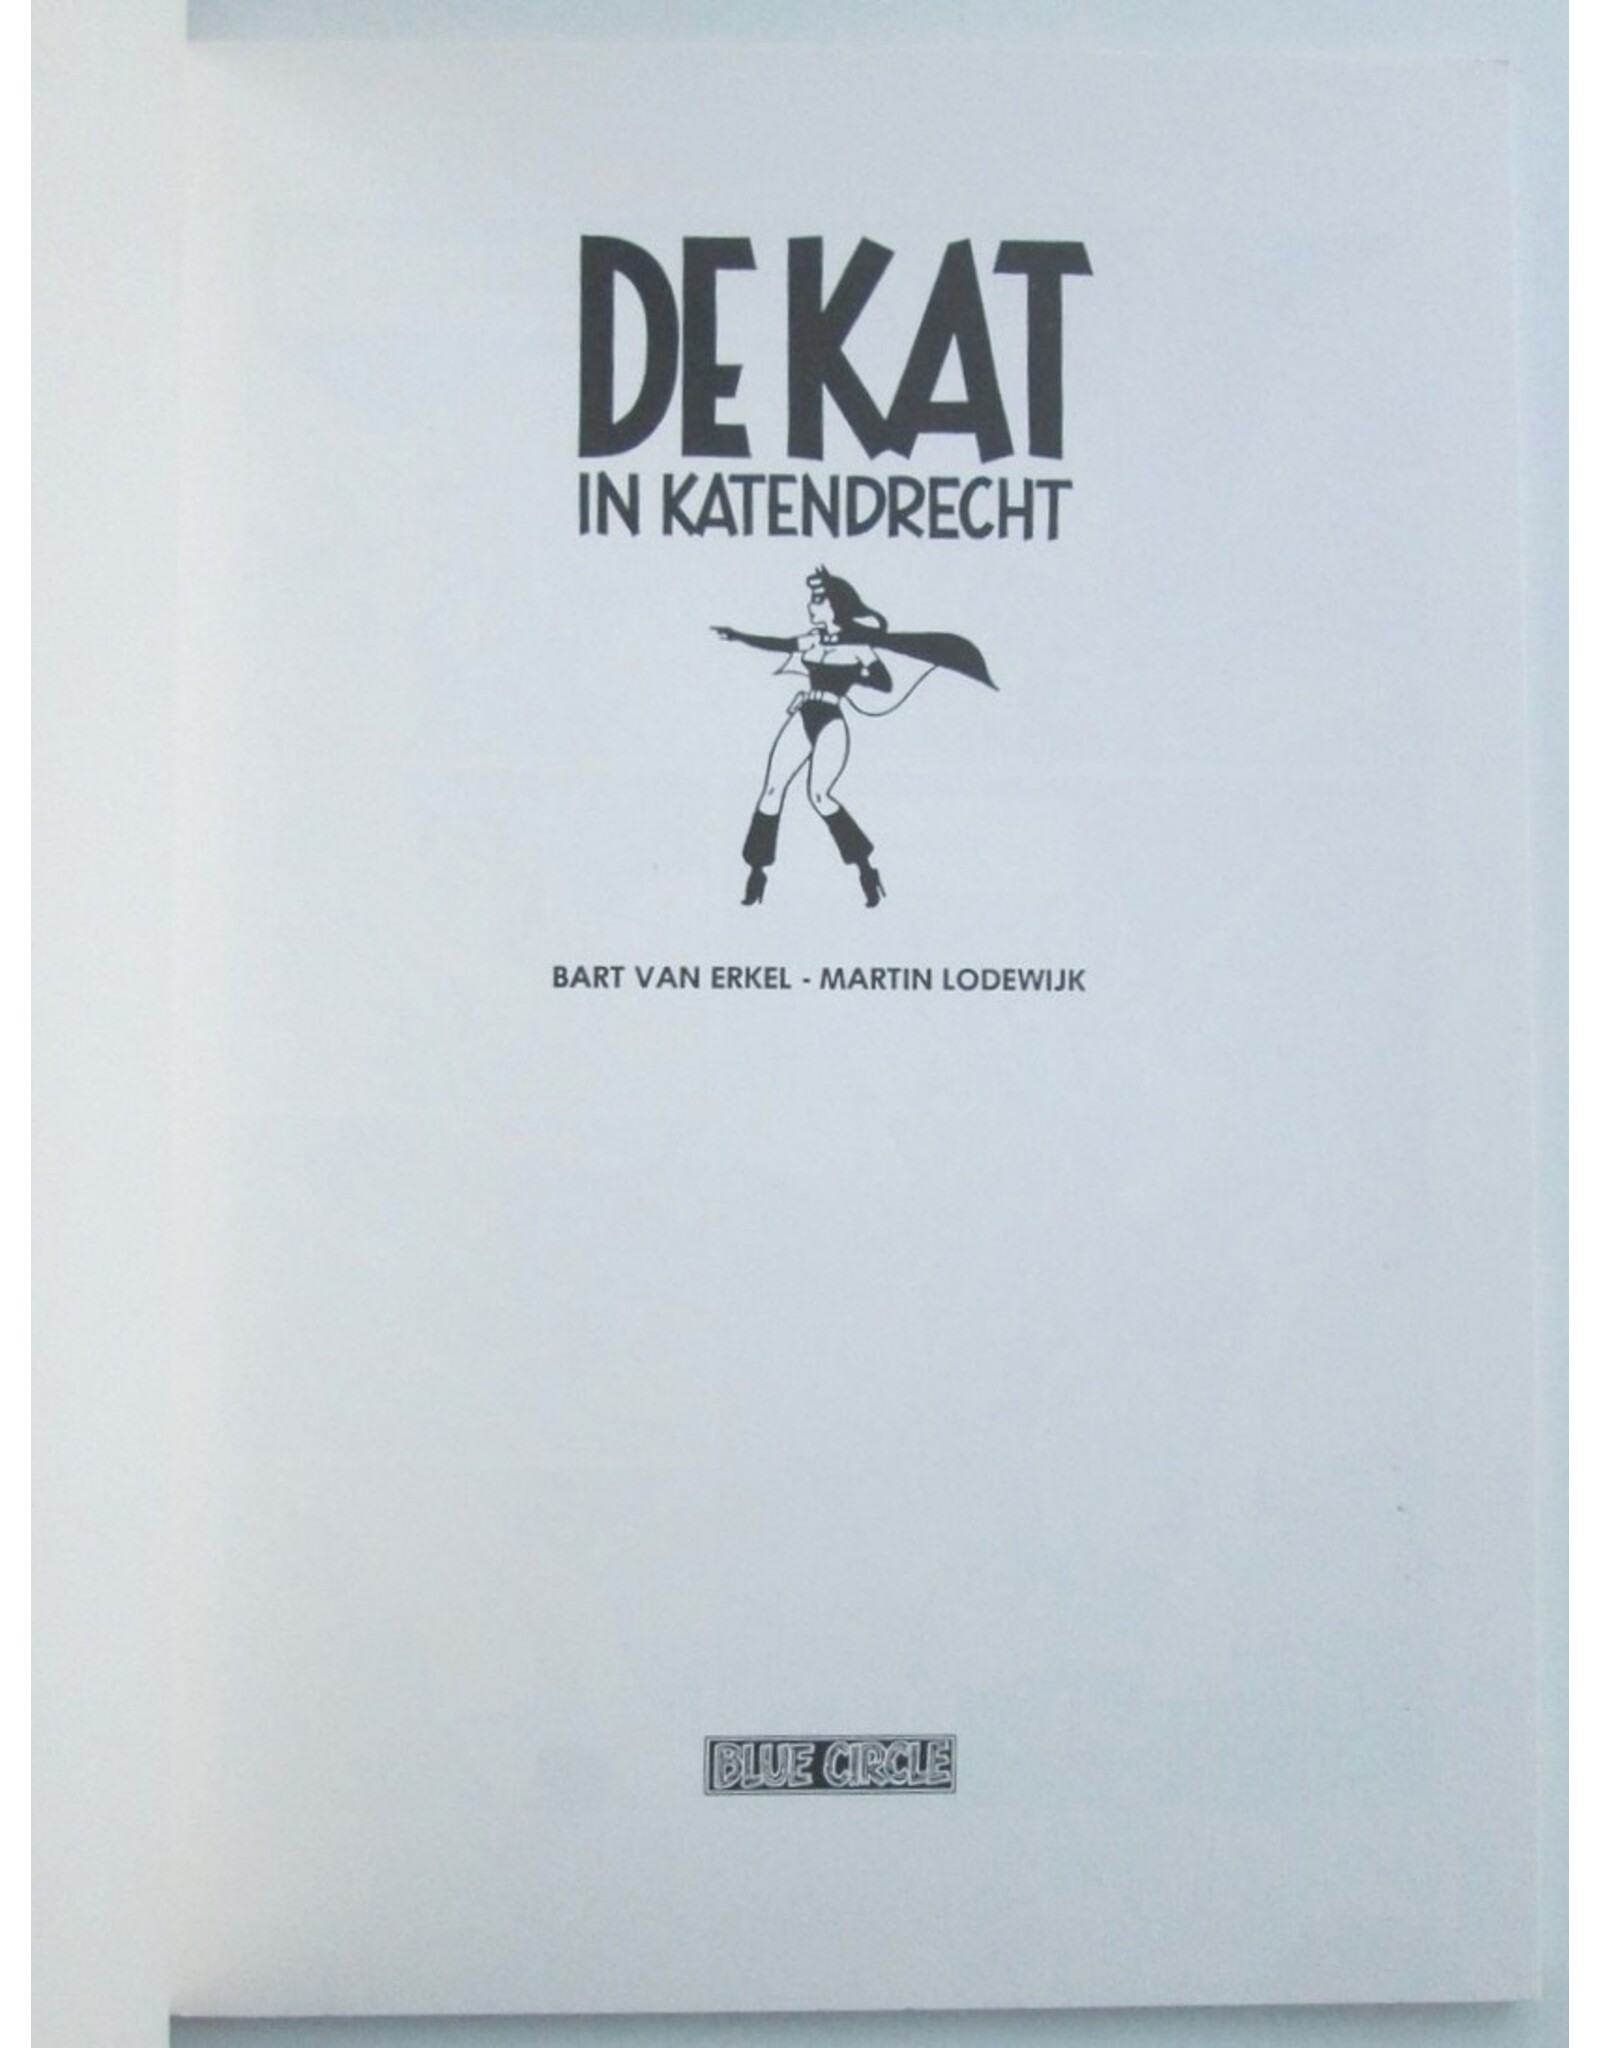 Bart van Erkel & Martin Lodewijk - De Kat in Katendrecht